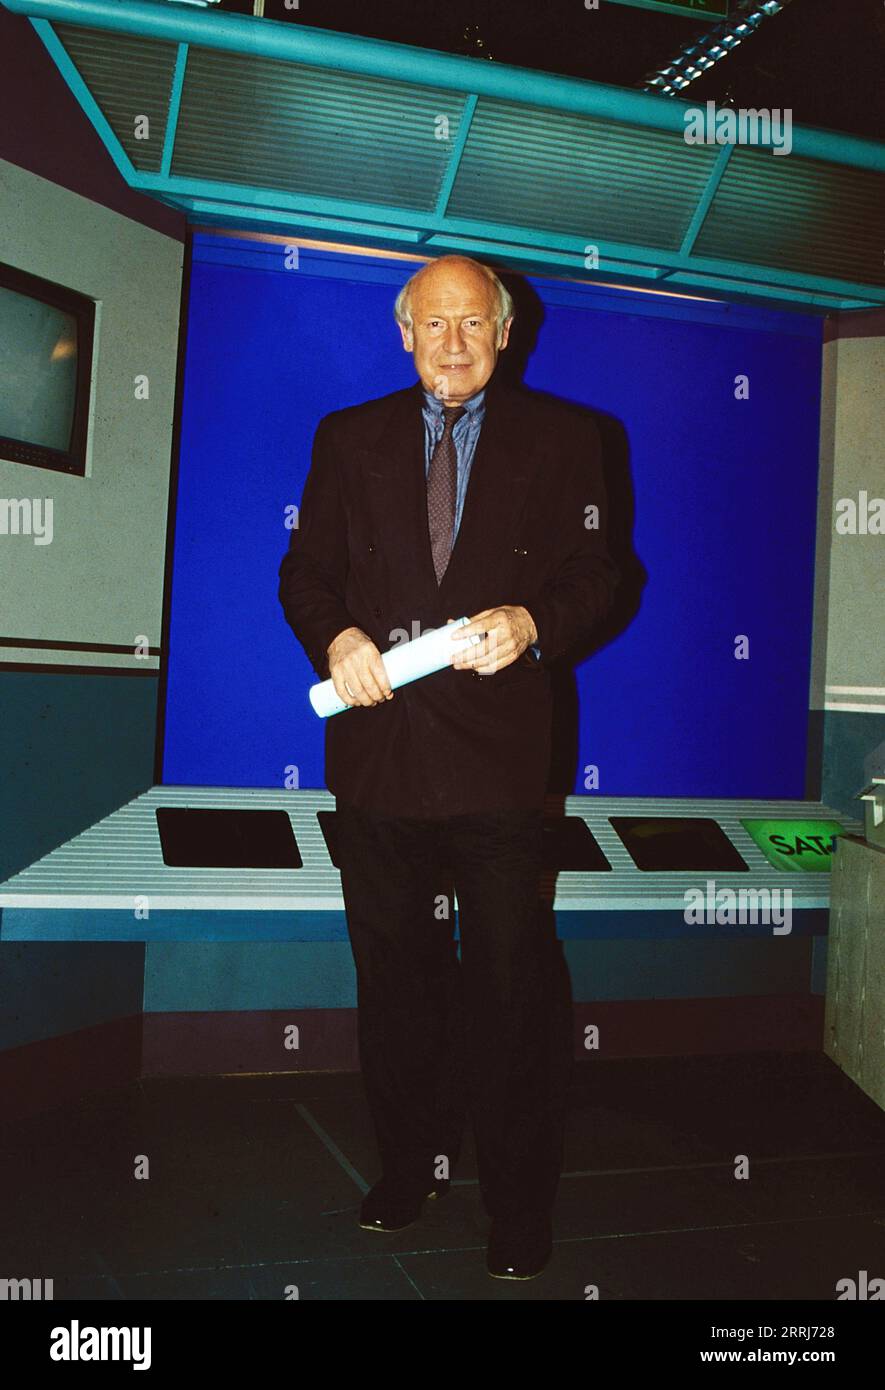 Dieter Kronzucker, deutscher Journalist, Fernsehmoderator und Publizist, in seiner Zeit beim Sender Sat 1, Deutschland 1993. Stockfoto